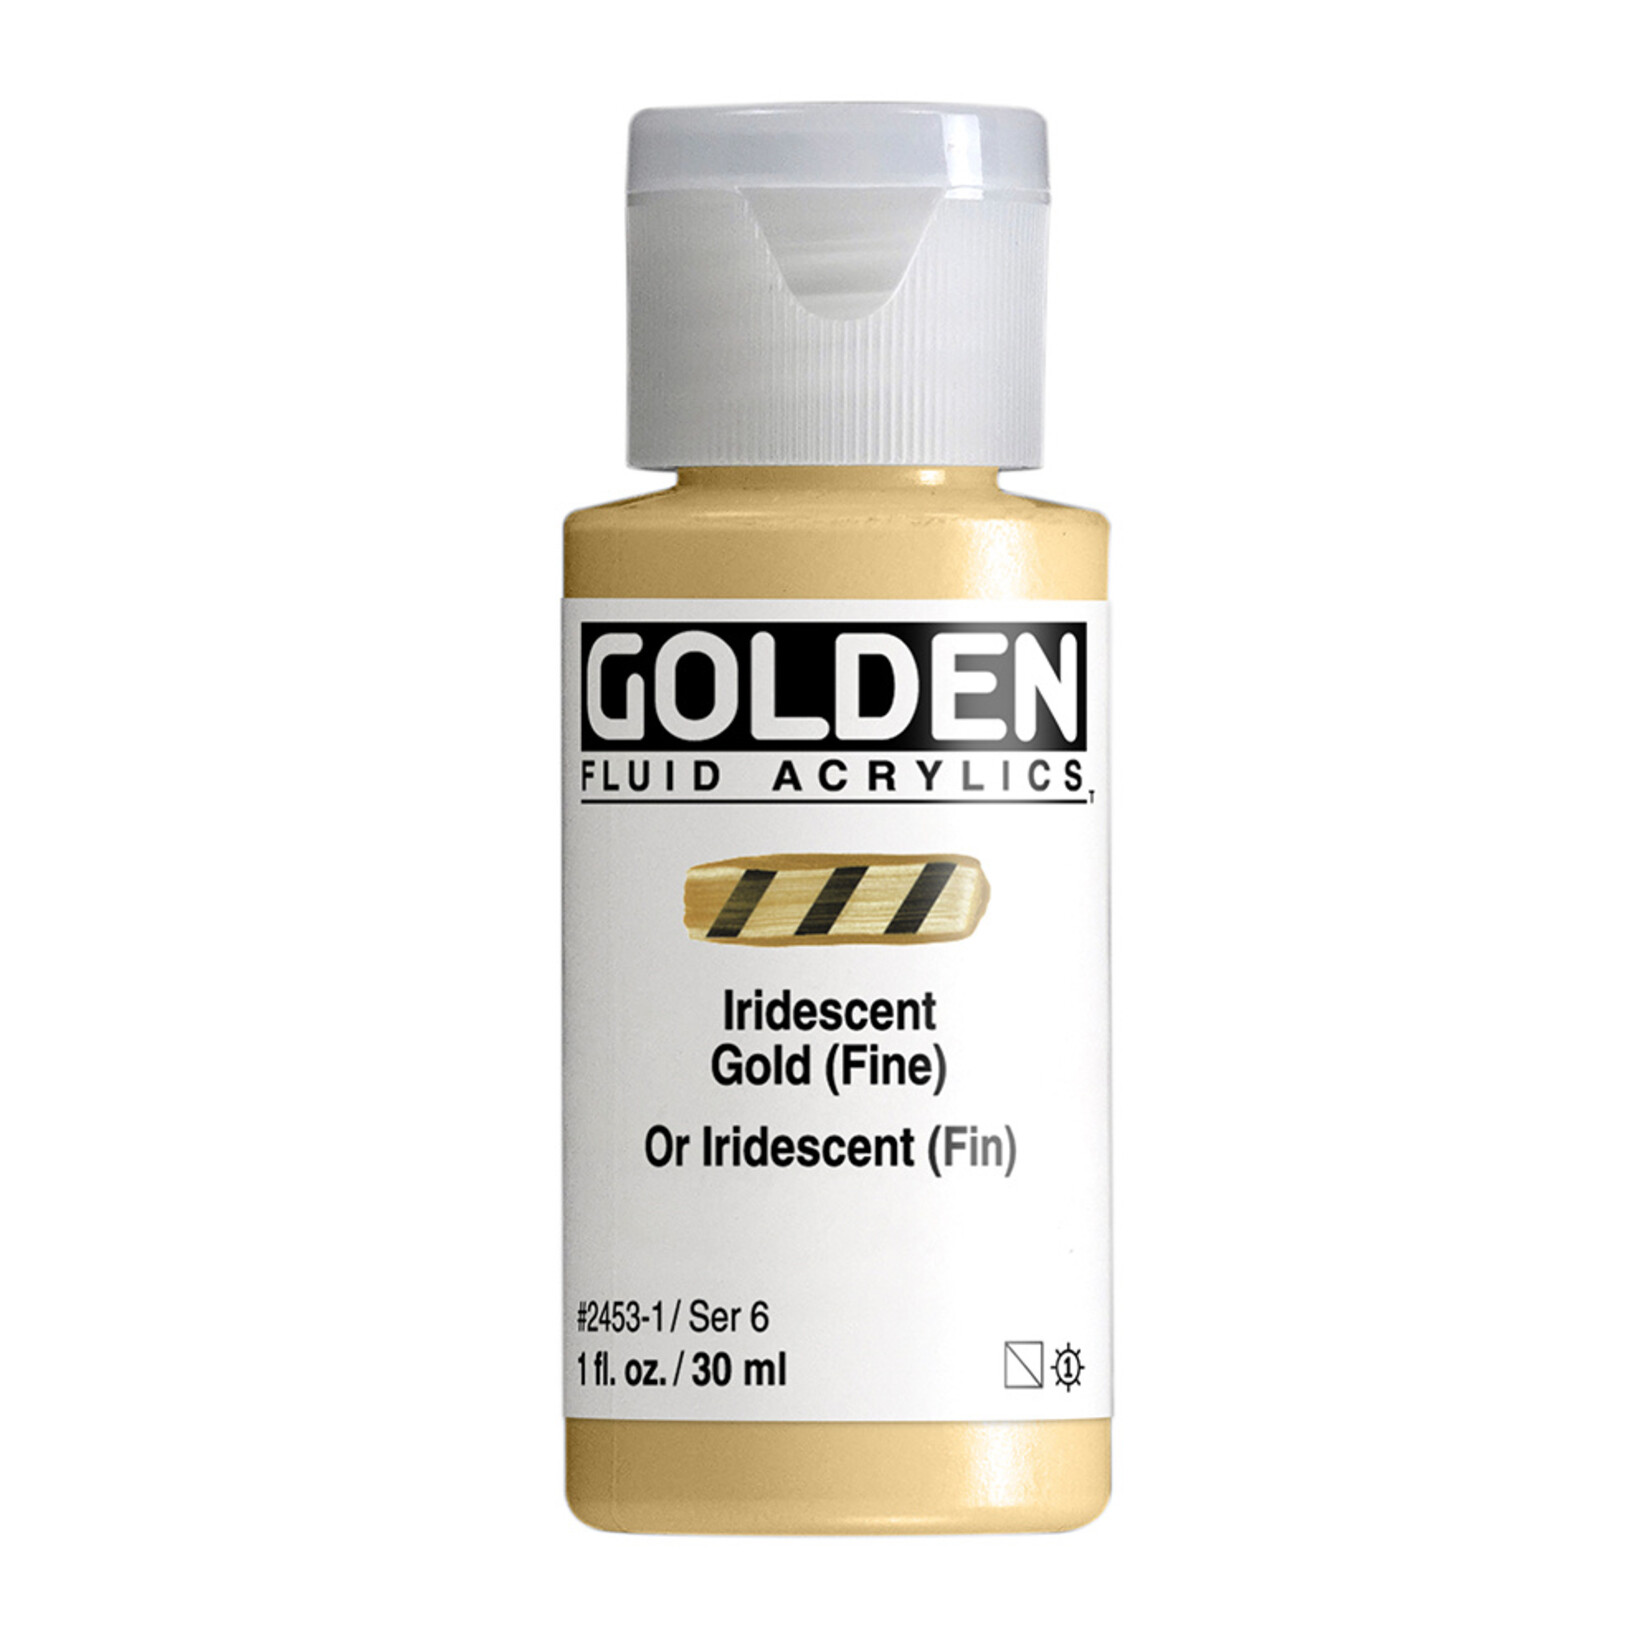 GOLDEN GOLDEN FLUID ACRYLIC 1OZ IRIDESCENT GOLD (FINE)